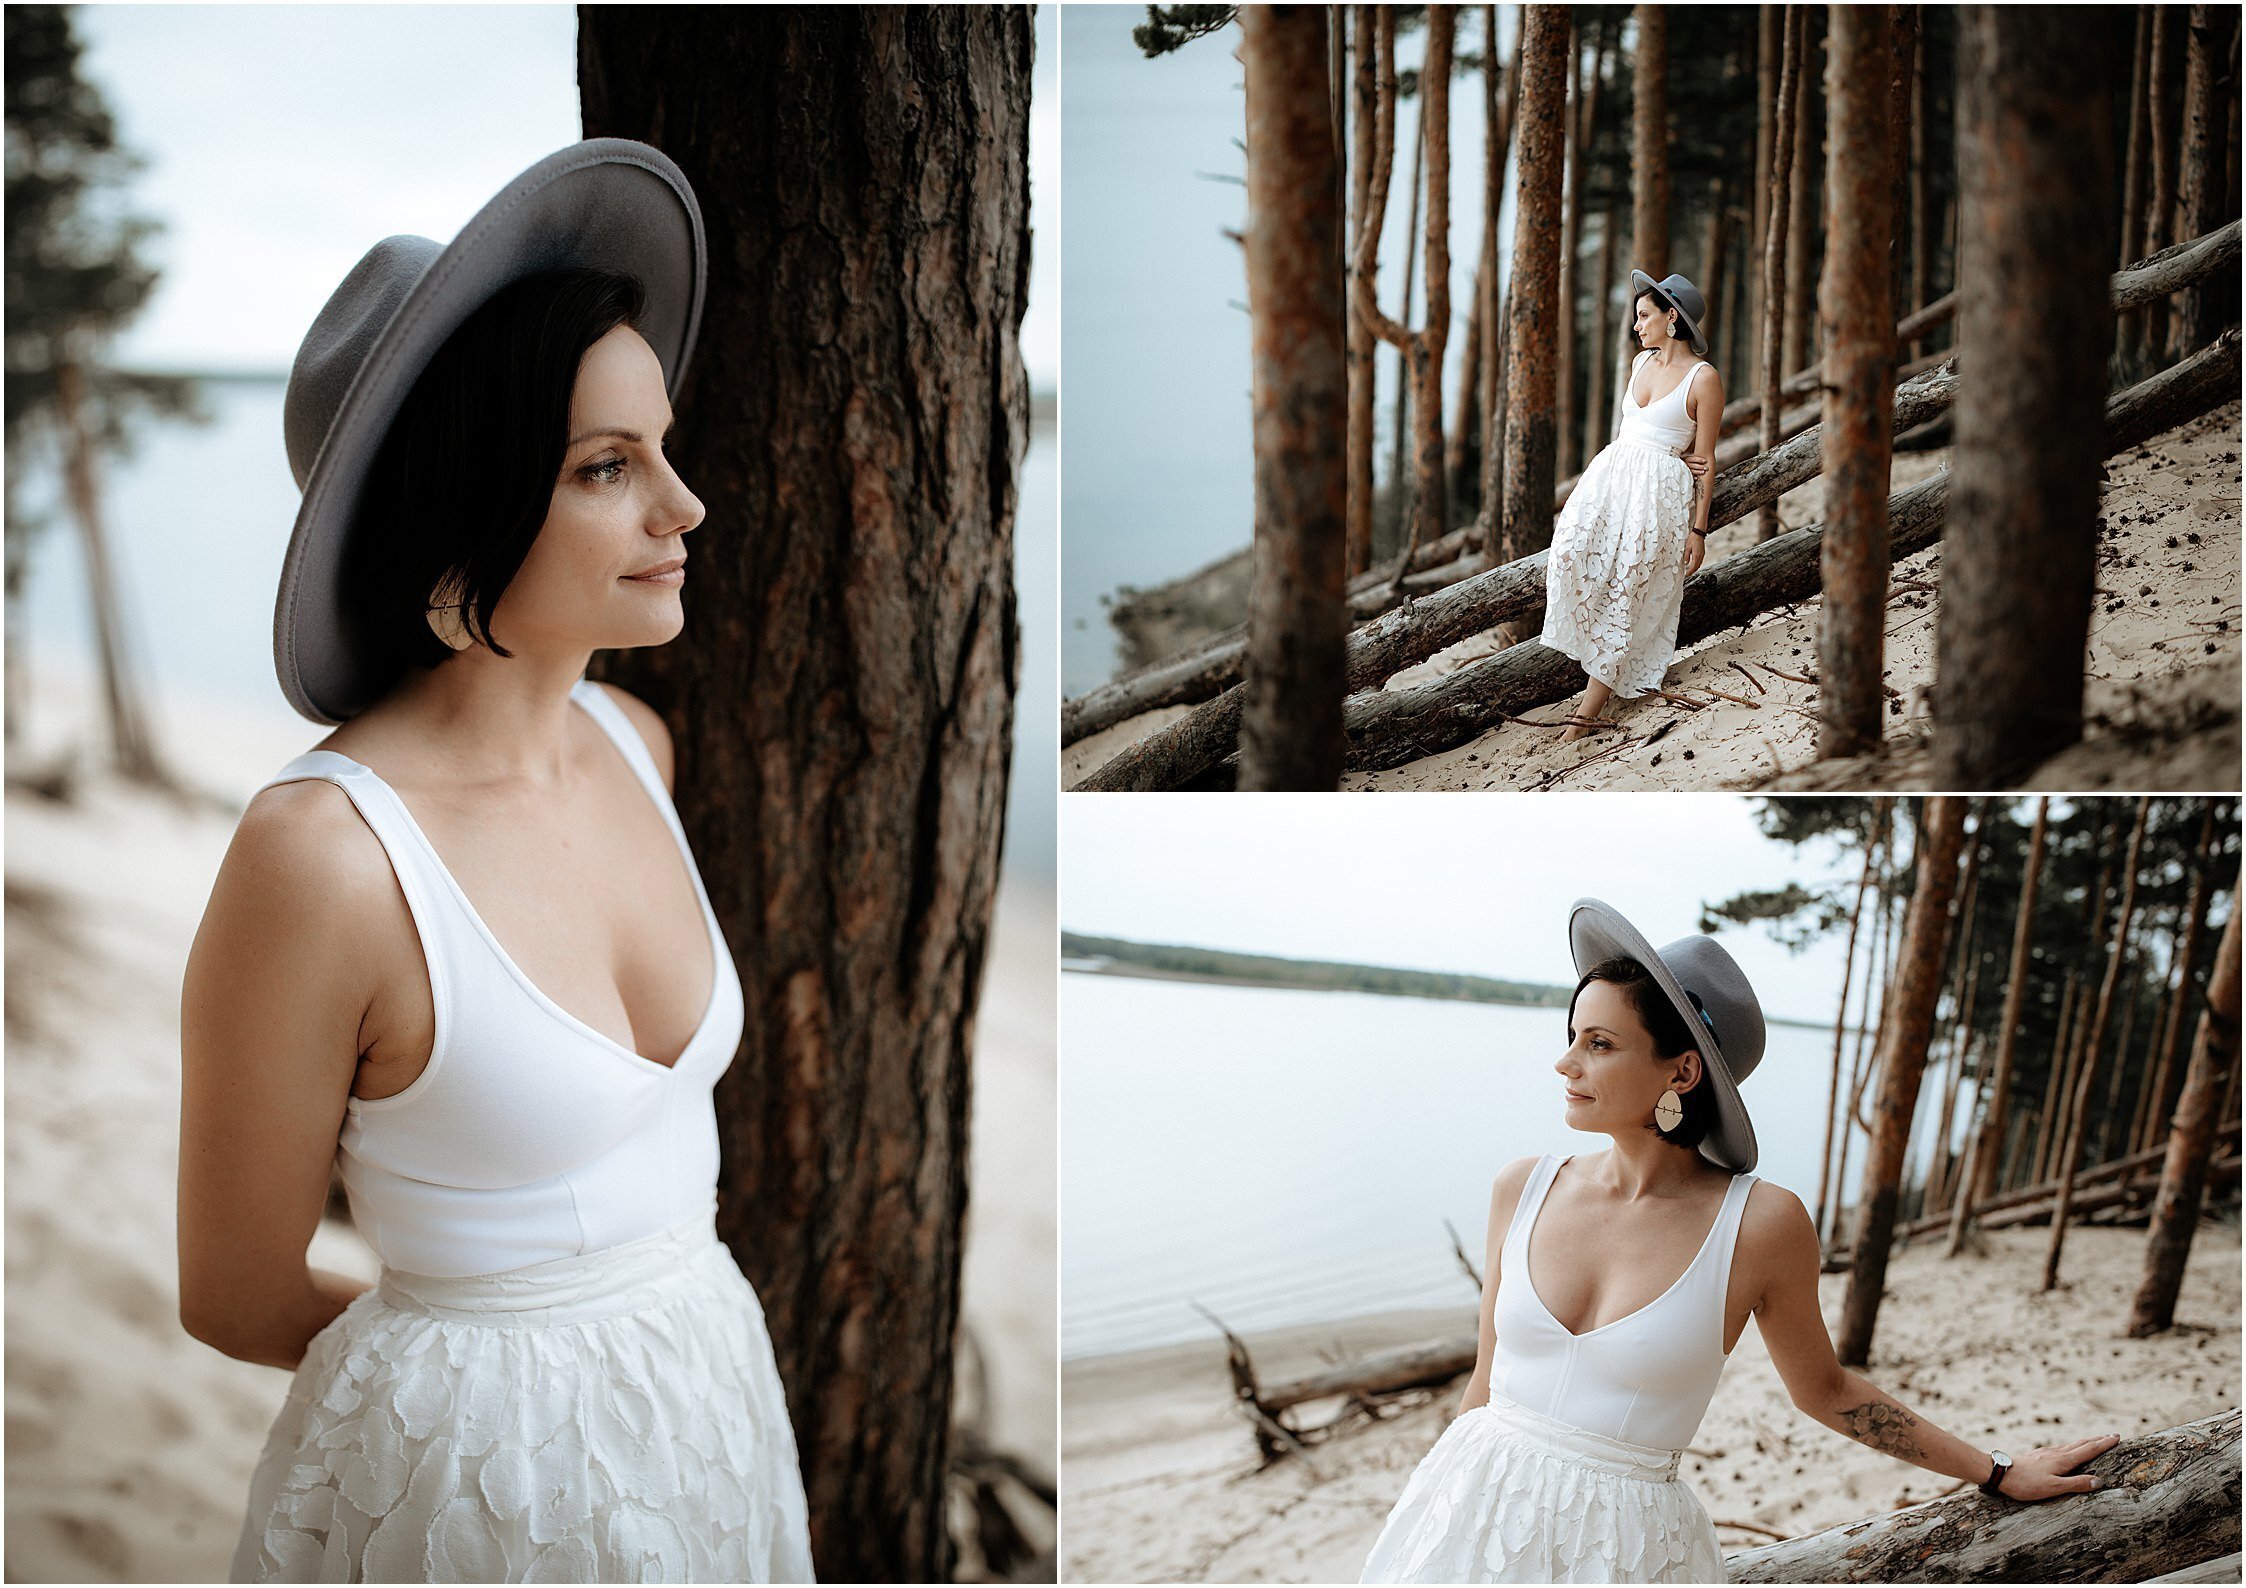 Zanda+Auckland+wedding+photographer+romantic+couple+portrait++white+sand+dunes+Europe+Latvia+New+Zealand_8.jpeg